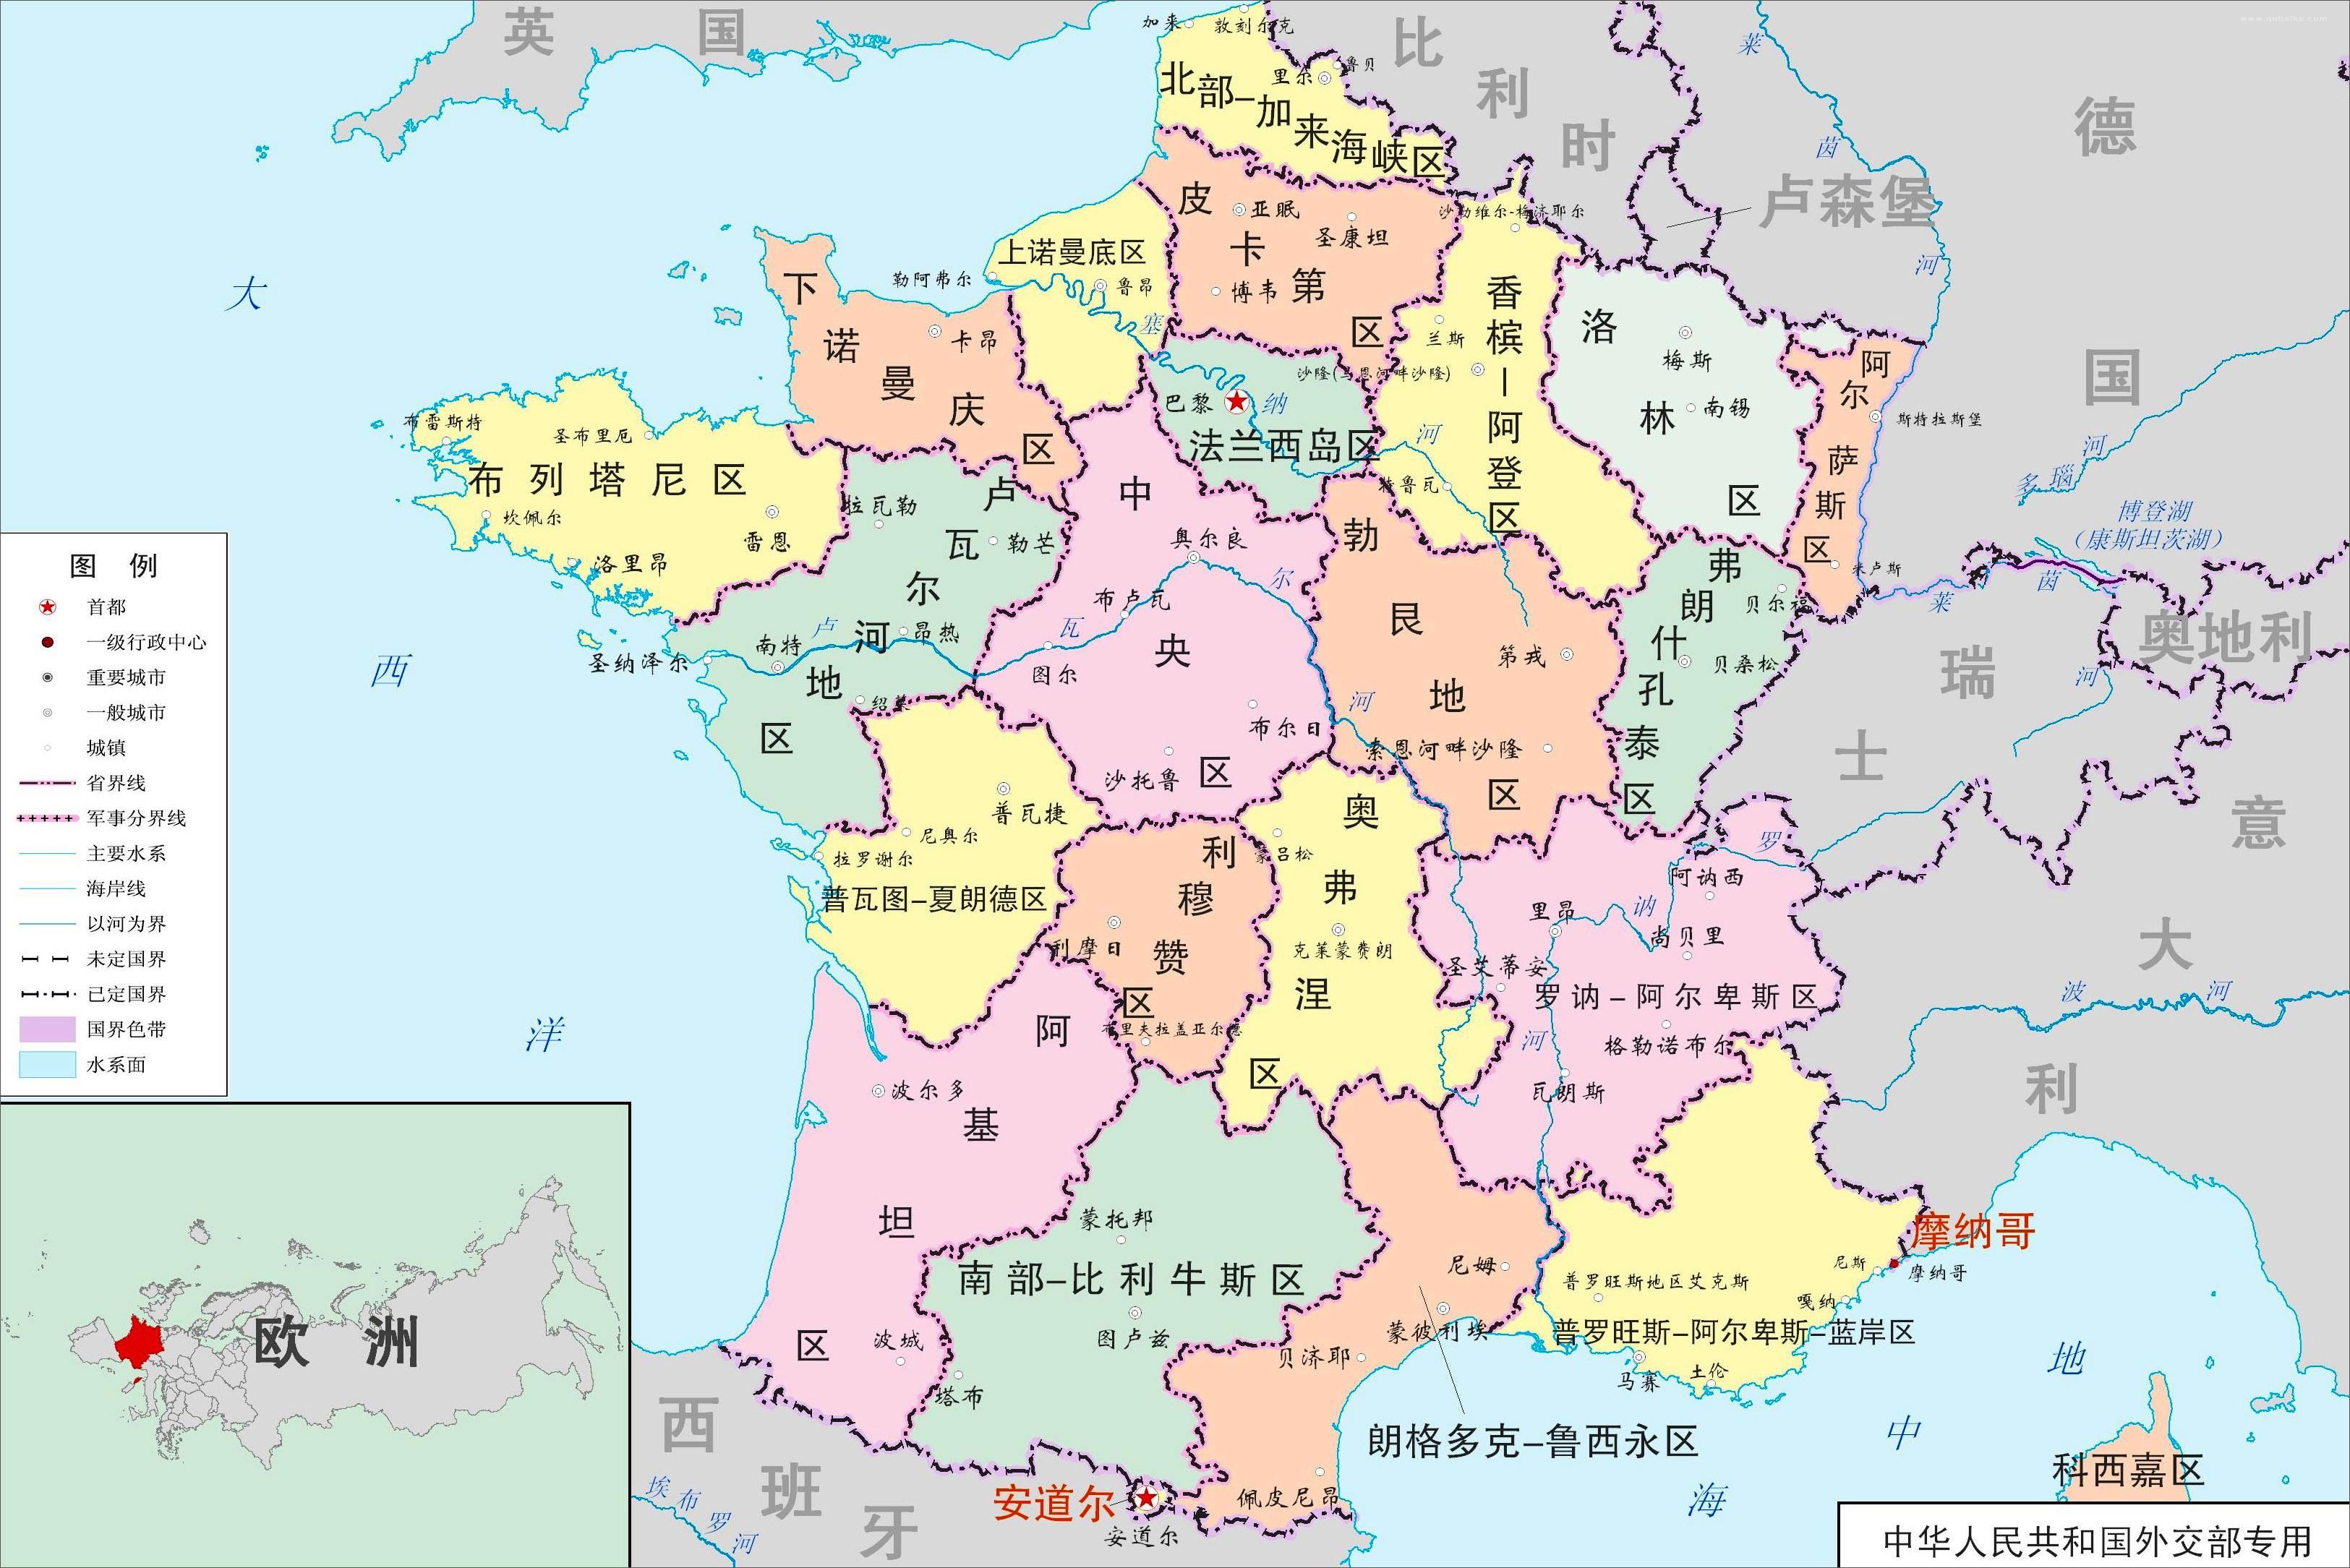 法国共和国,简称法国,是西欧半总统共和国,海外领土包括南美洲和南